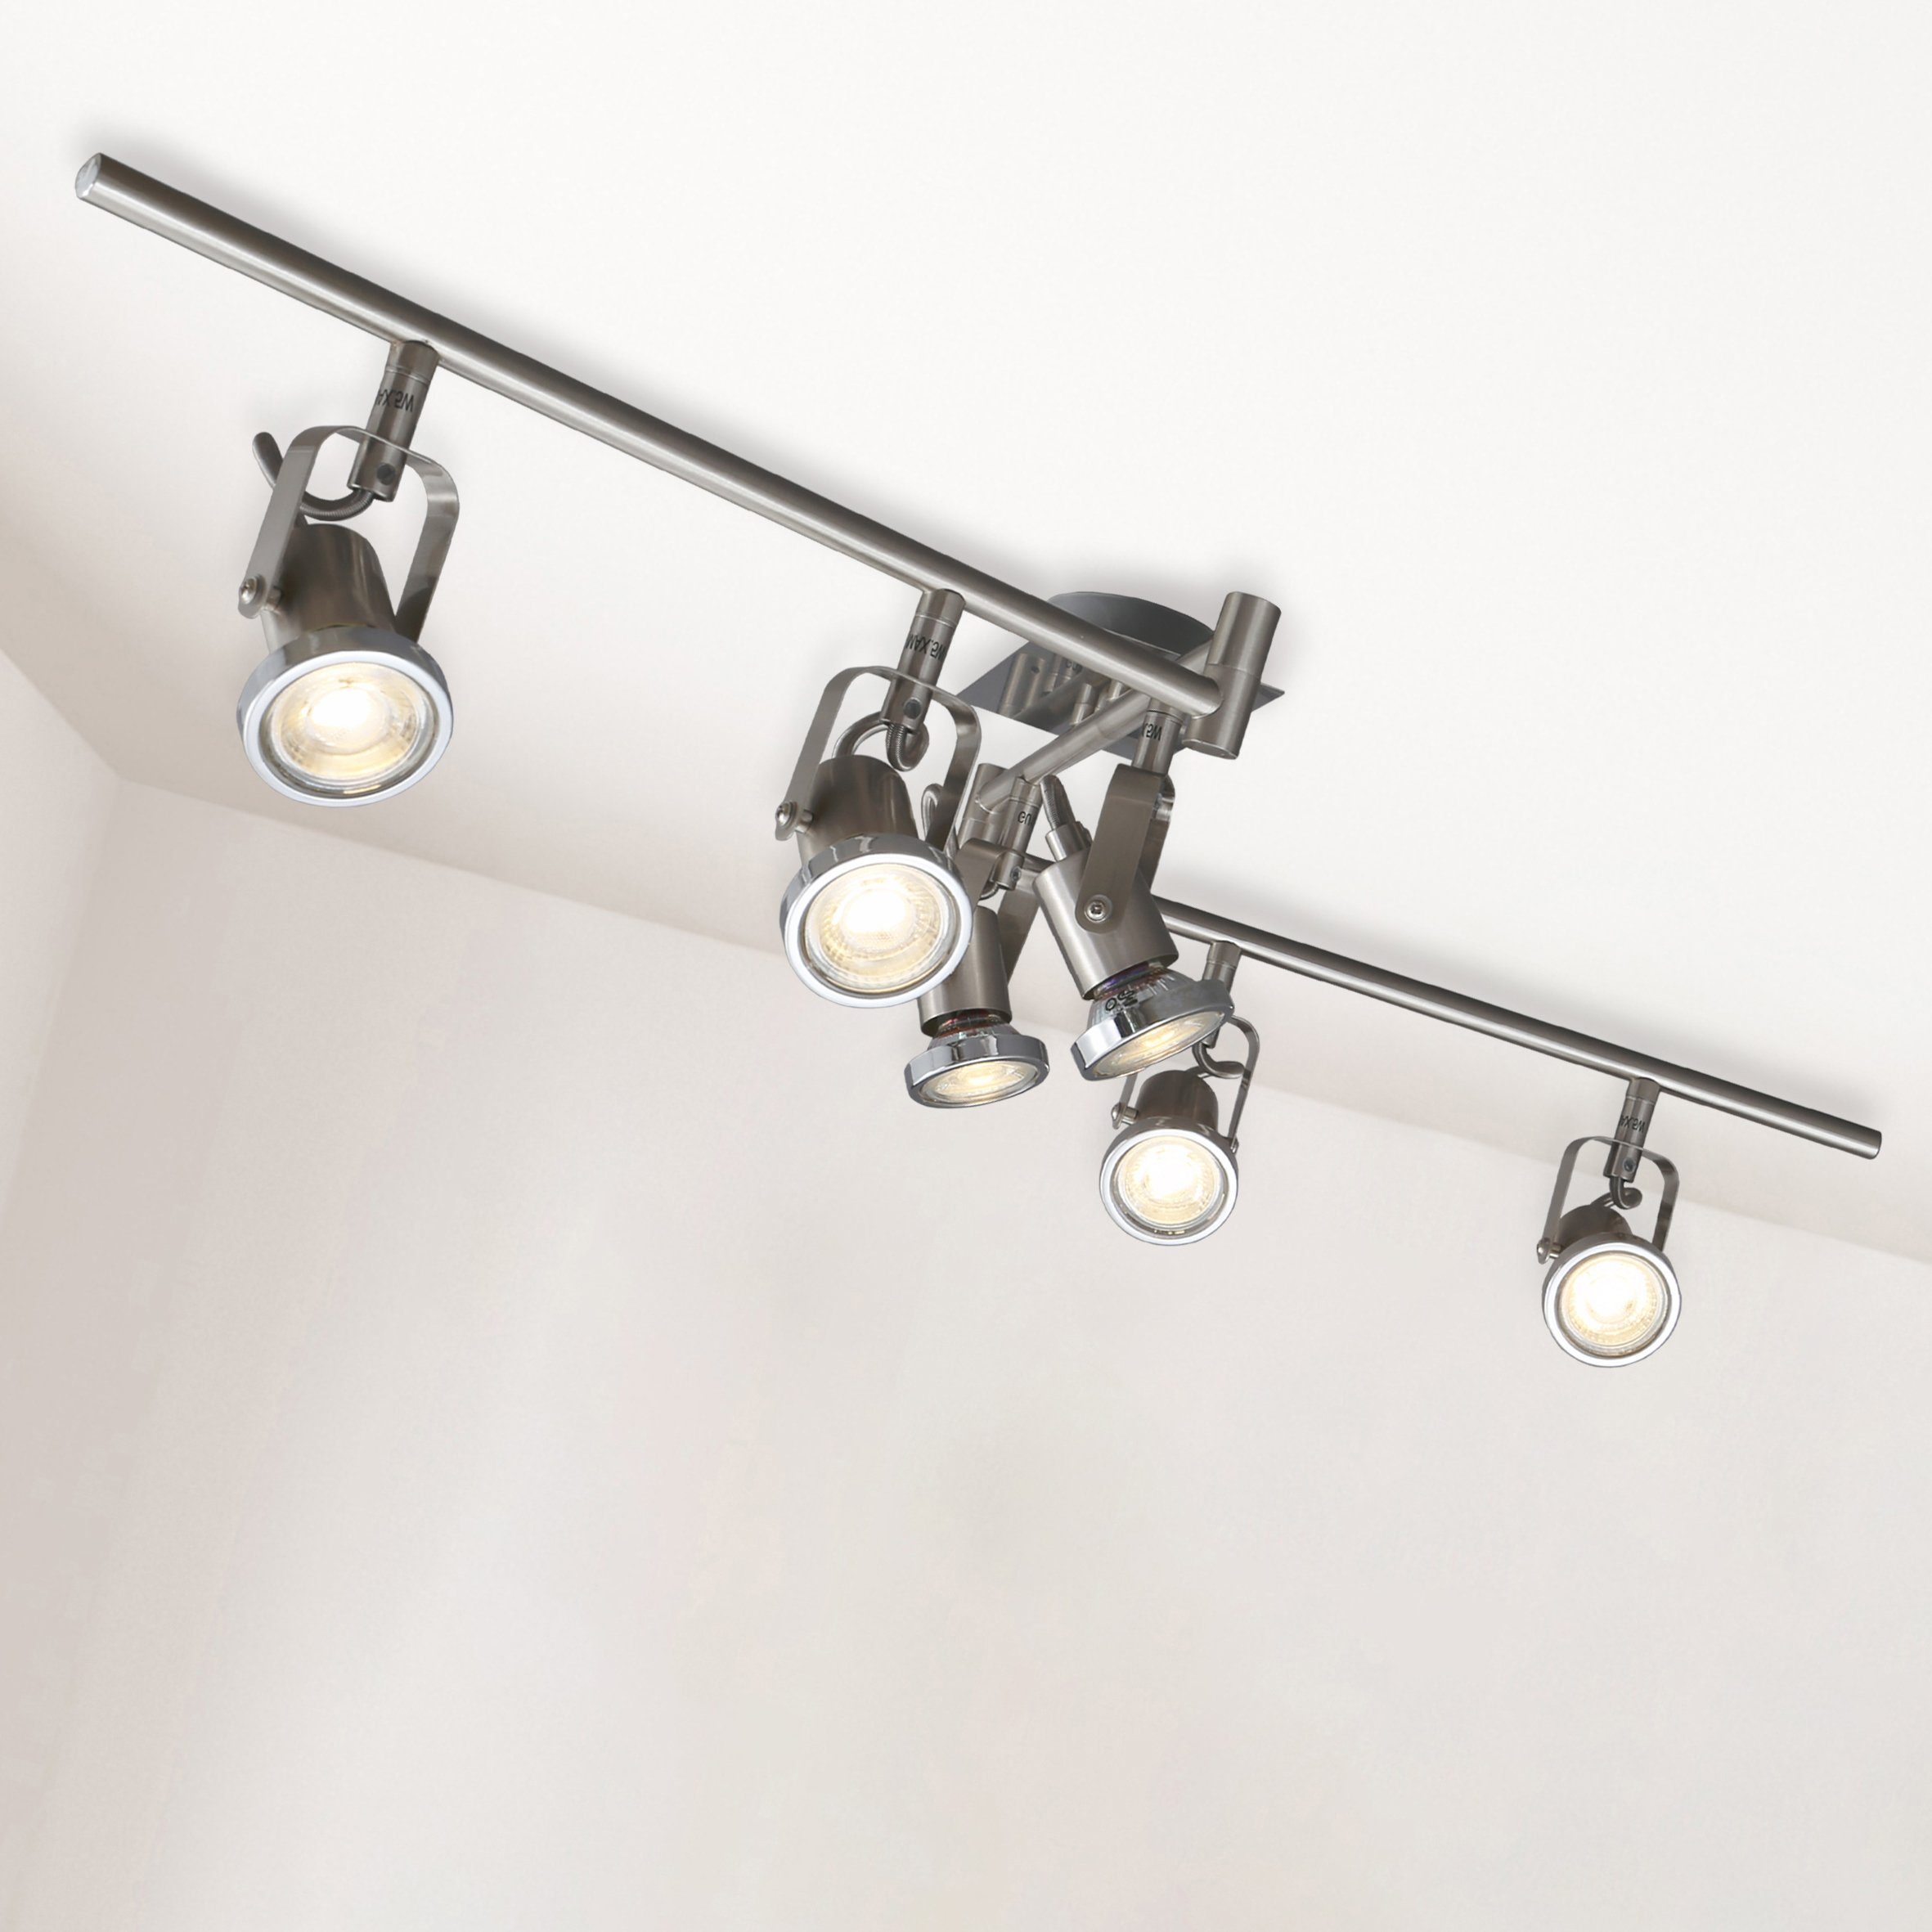 Deckenlampe LED Decken-Leuchte Strahler 6-flammig Wohnzimmer 6er Spot schwenkbar 